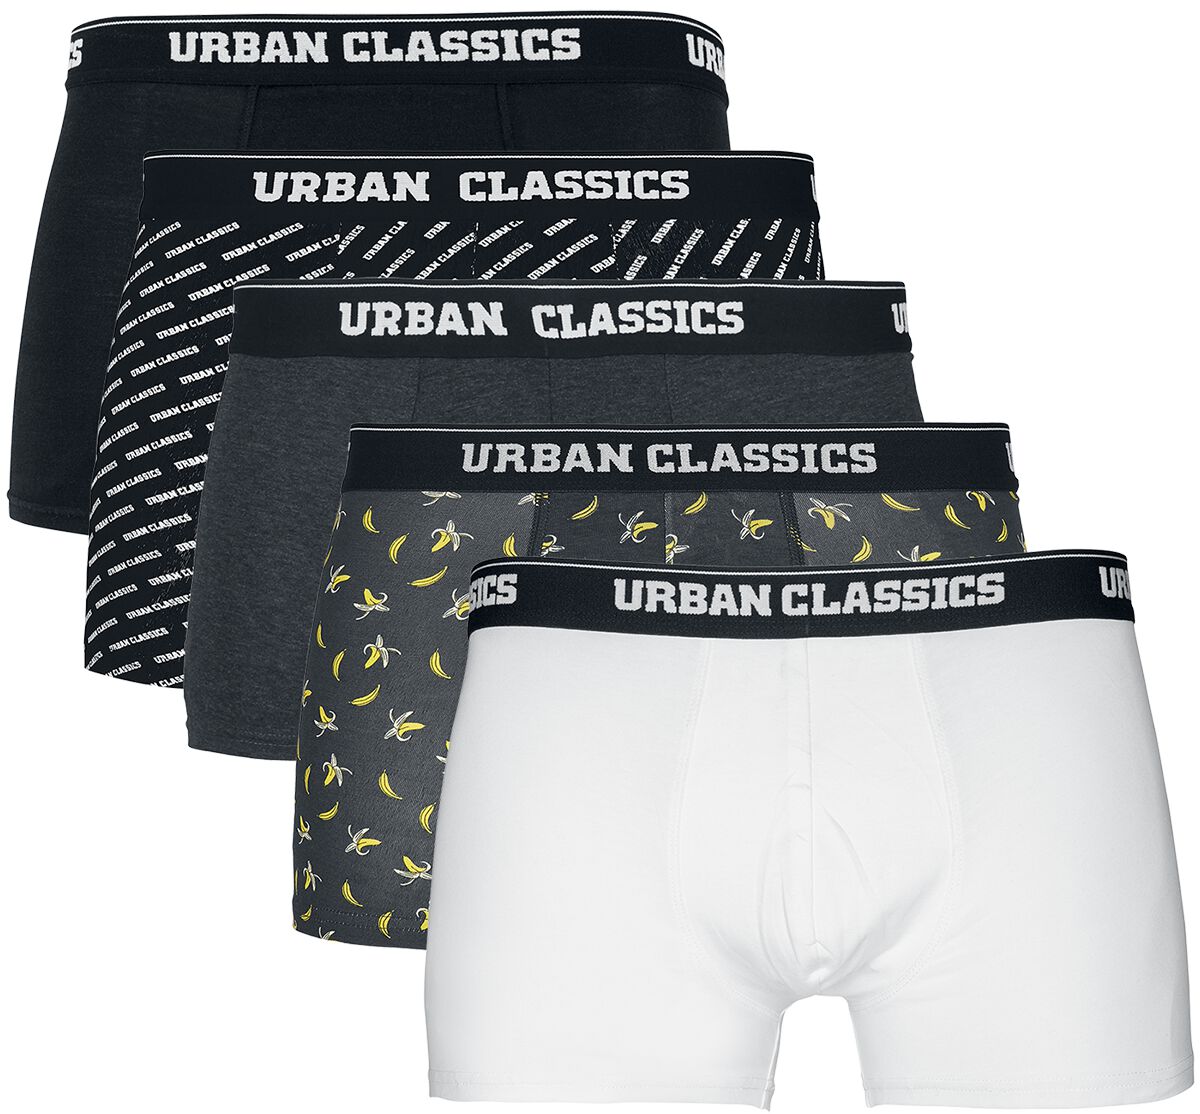 Urban Classics Boxershort-Set - Boxer Shorts 5-Pack - S bis XXL - für Männer - Größe L - schwarz/grau/weiß